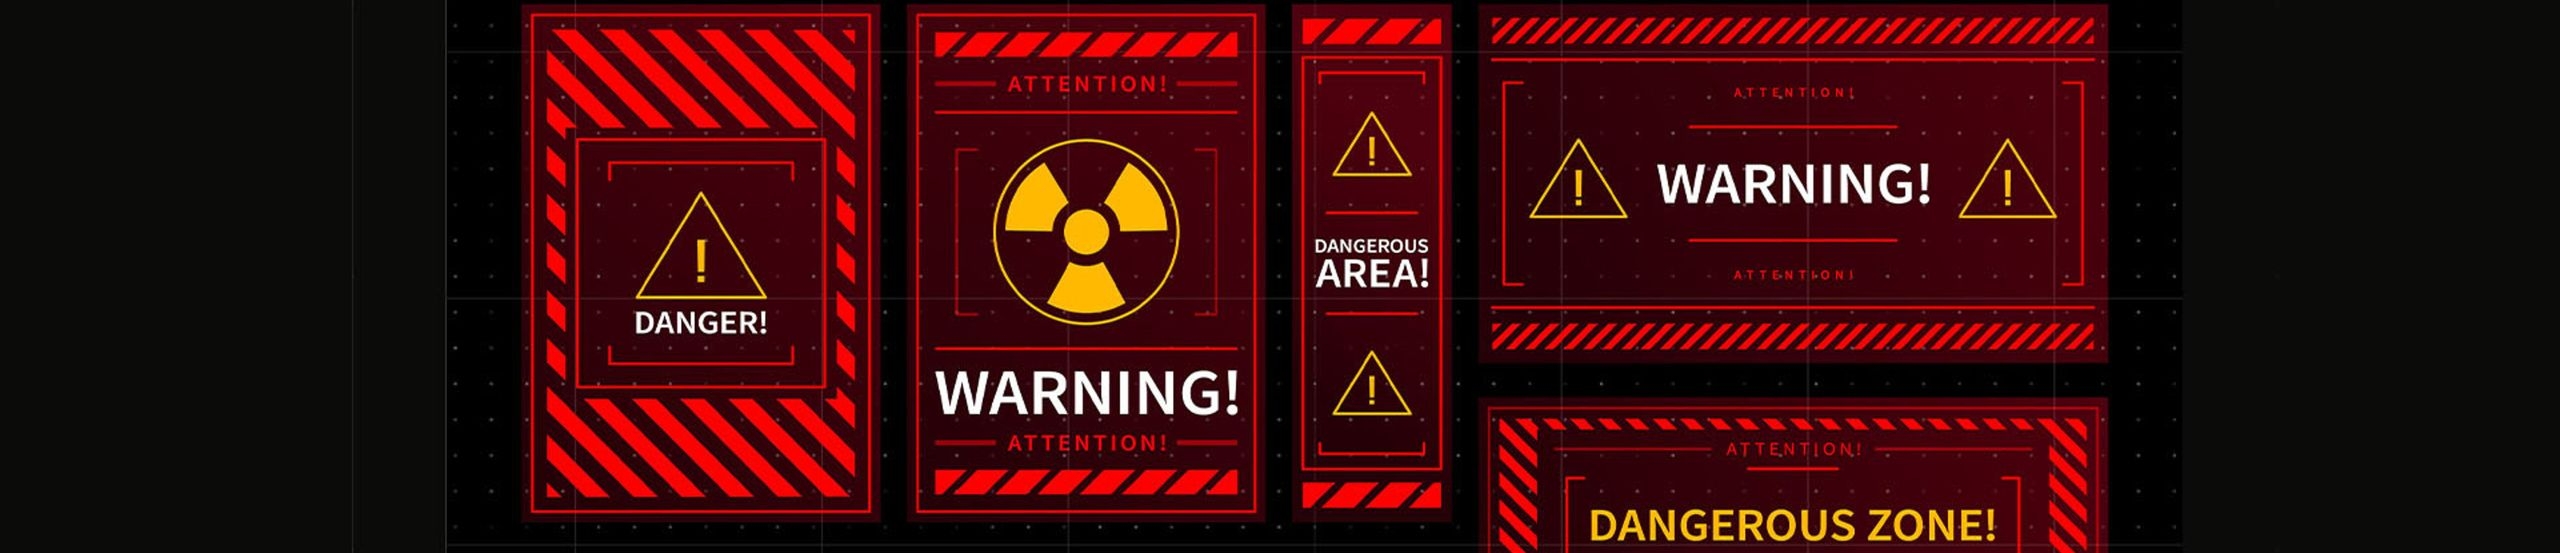 Unterschiedliche Alarmschilder auf schwarzem Hintergrund mit warnenden Schriftzügen und grafischen Warnhinweisen